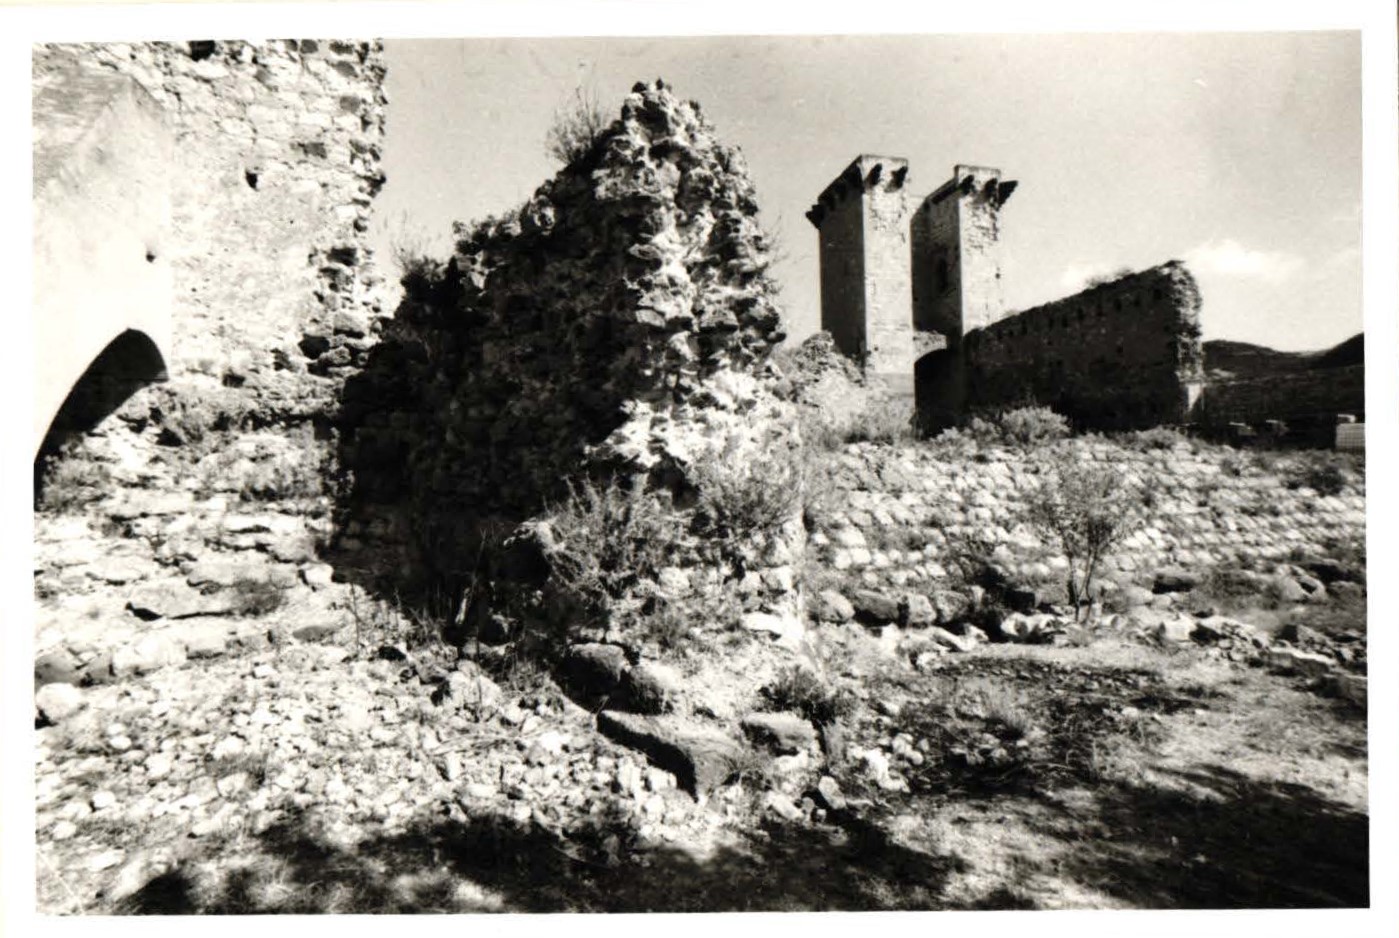 Castello di Serravalle (castello, con torri angolari, medievale, feudale, residenziale) - Bosa (NU)  (XII)